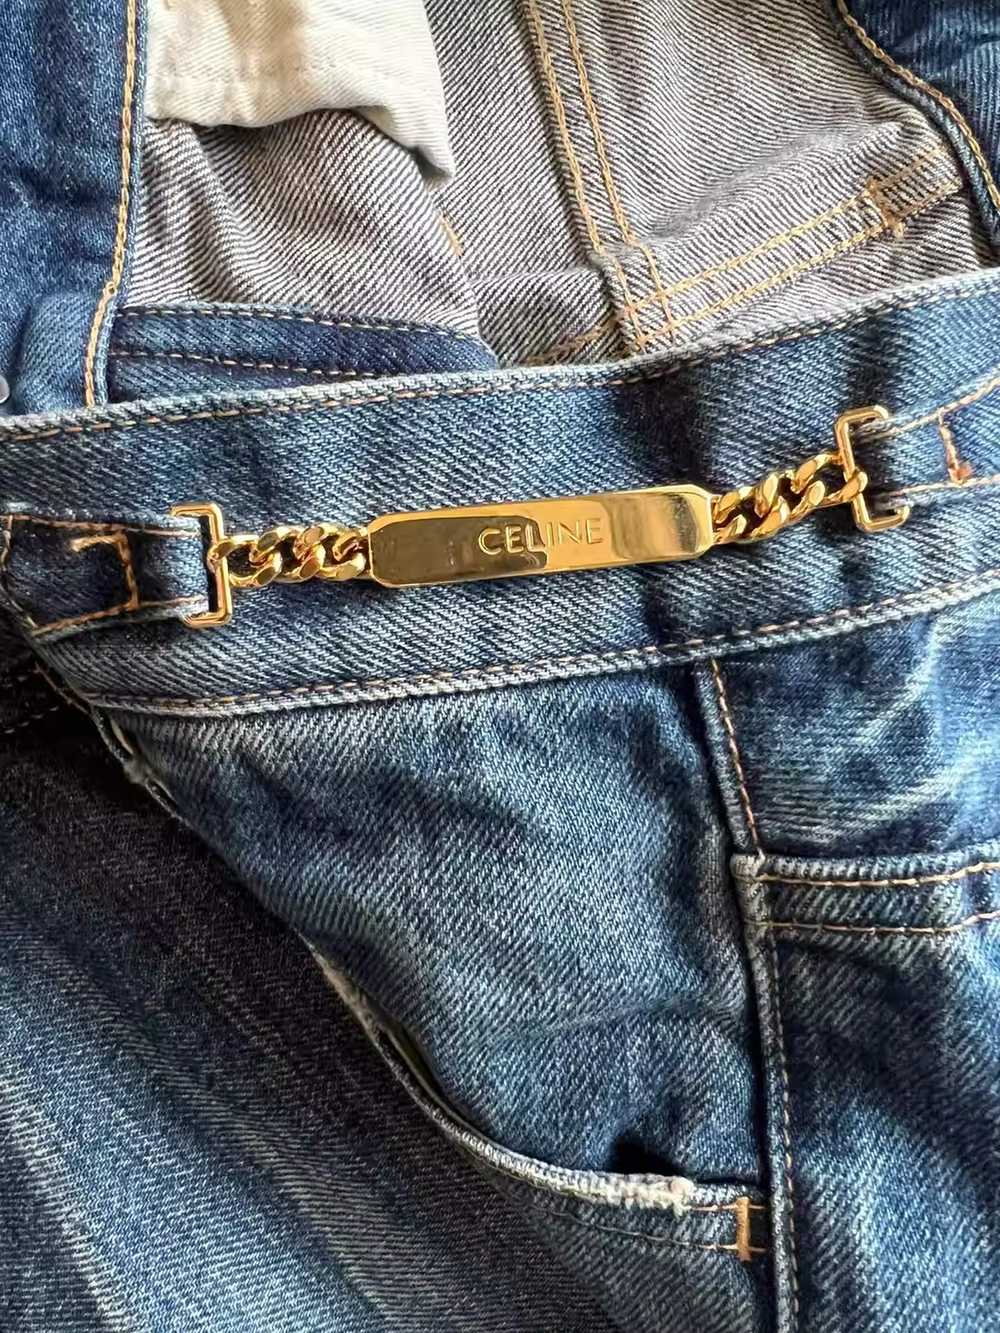 Celine celine flared jeans - image 4